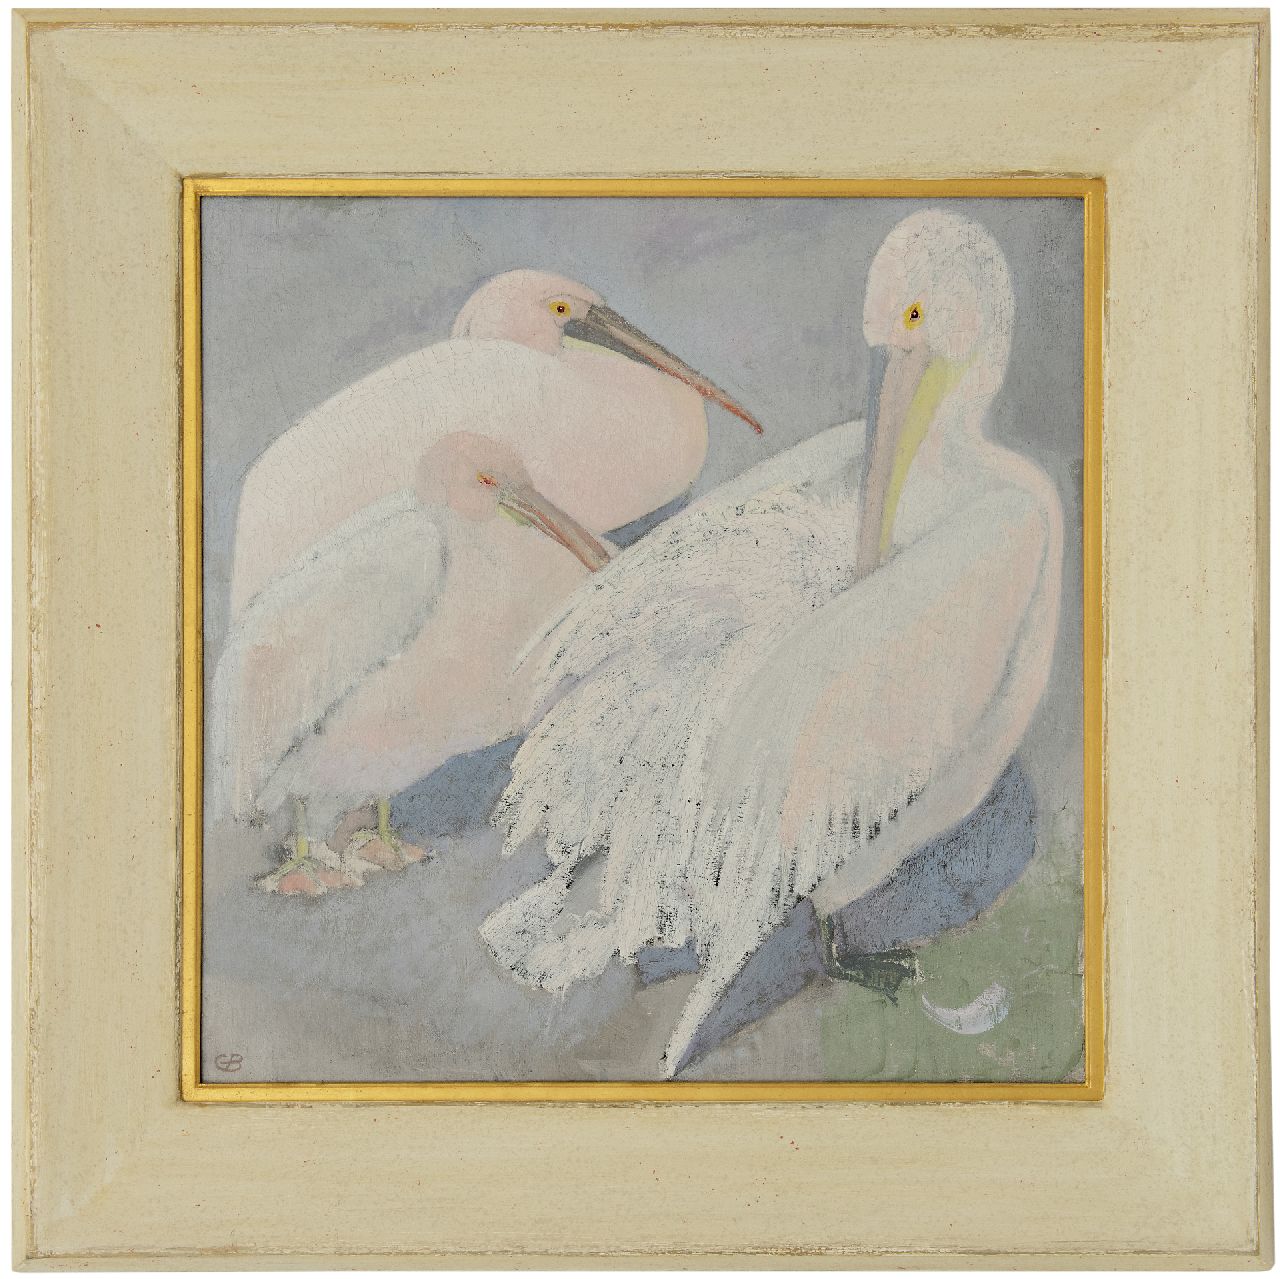 Bruigom M.C.  | Margaretha Cornelia 'Greta' Bruigom | Schilderijen te koop aangeboden | Drie pelikanen, olieverf op doek 60,3 x 60,1 cm, gesigneerd linksonder met monogram